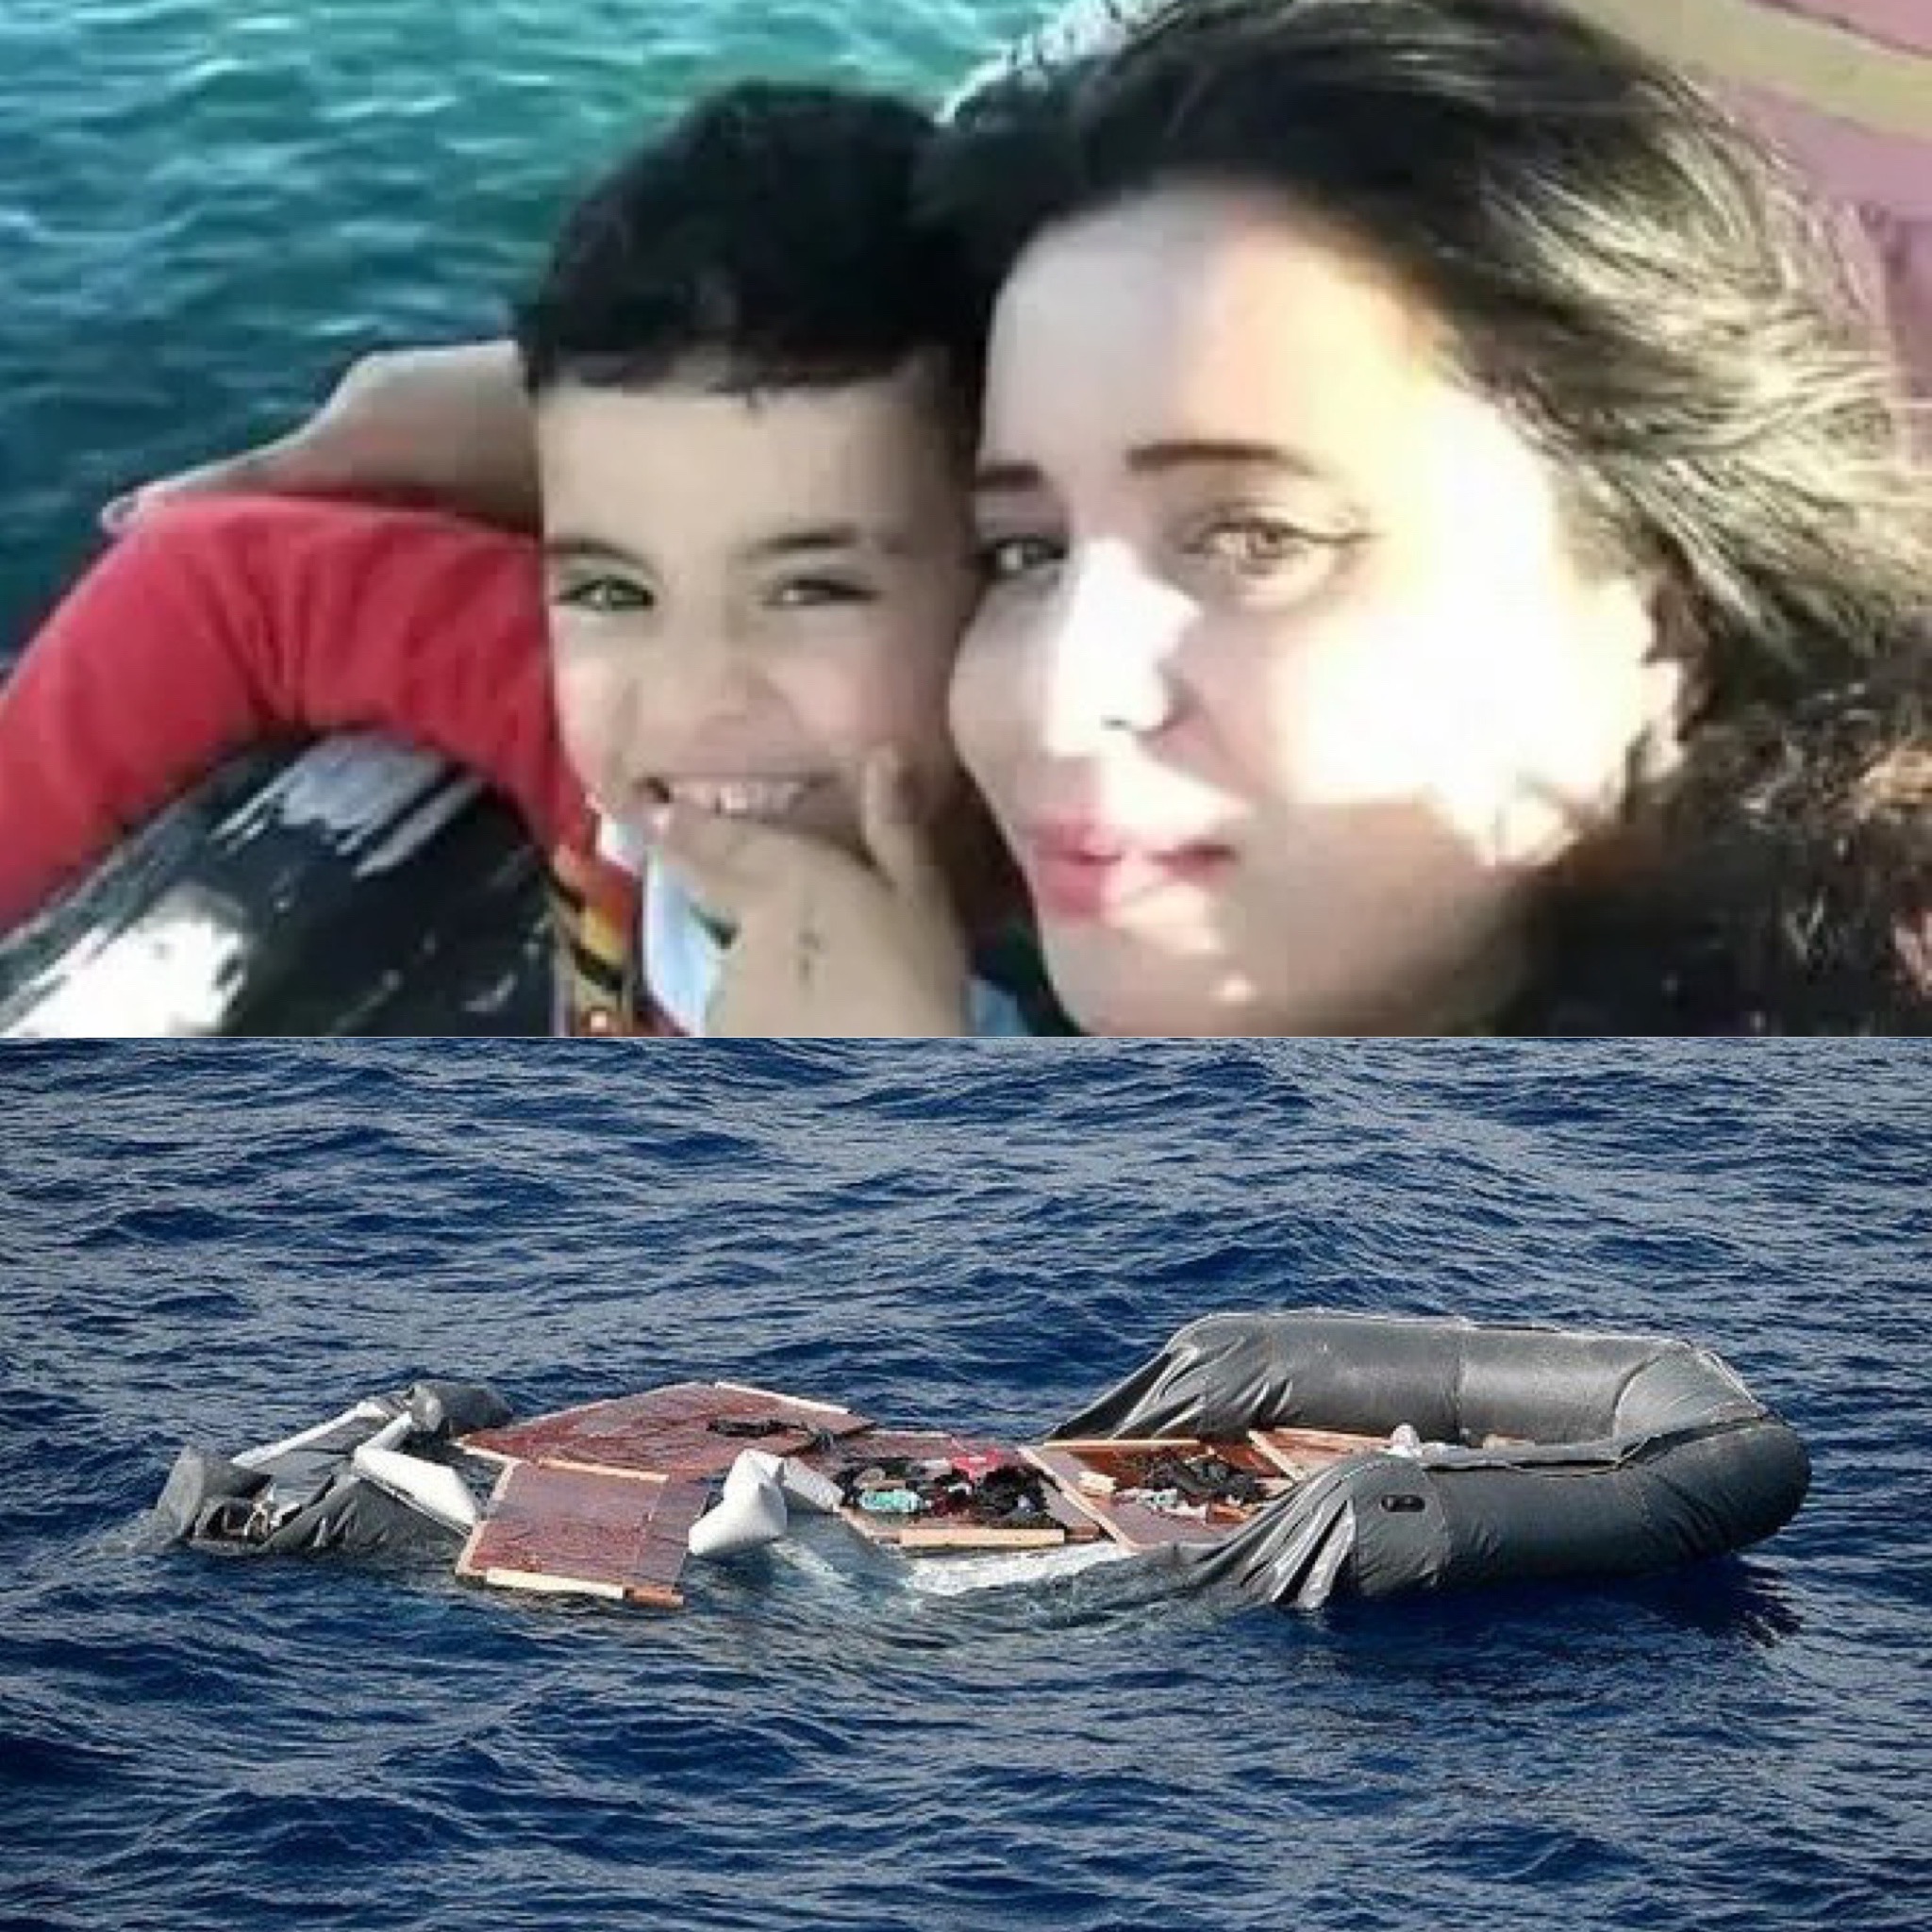 مادر و دختری که در دریا بلعیده شده اند